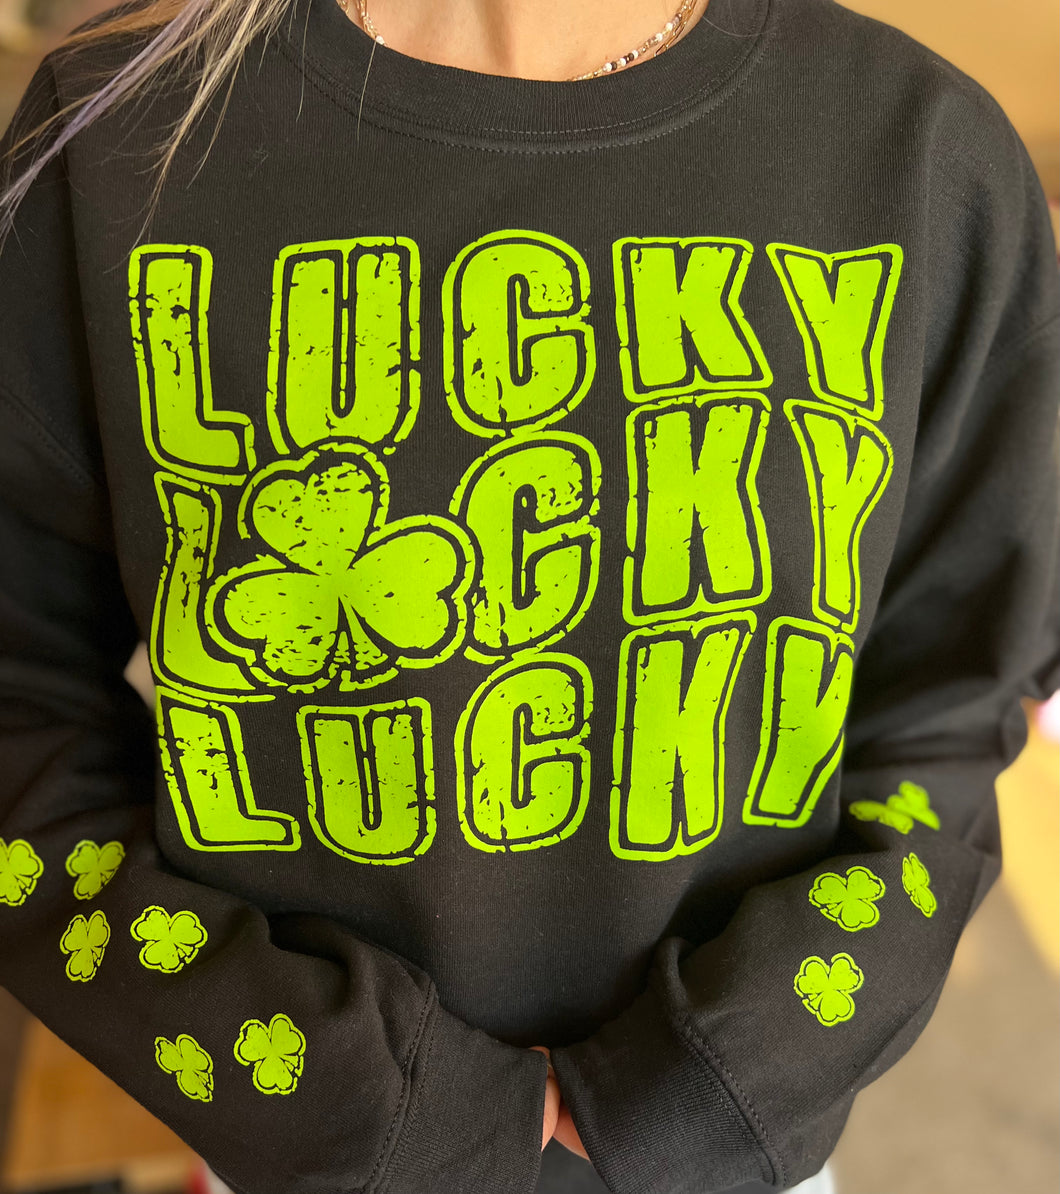 Lucky Lucky Lucky